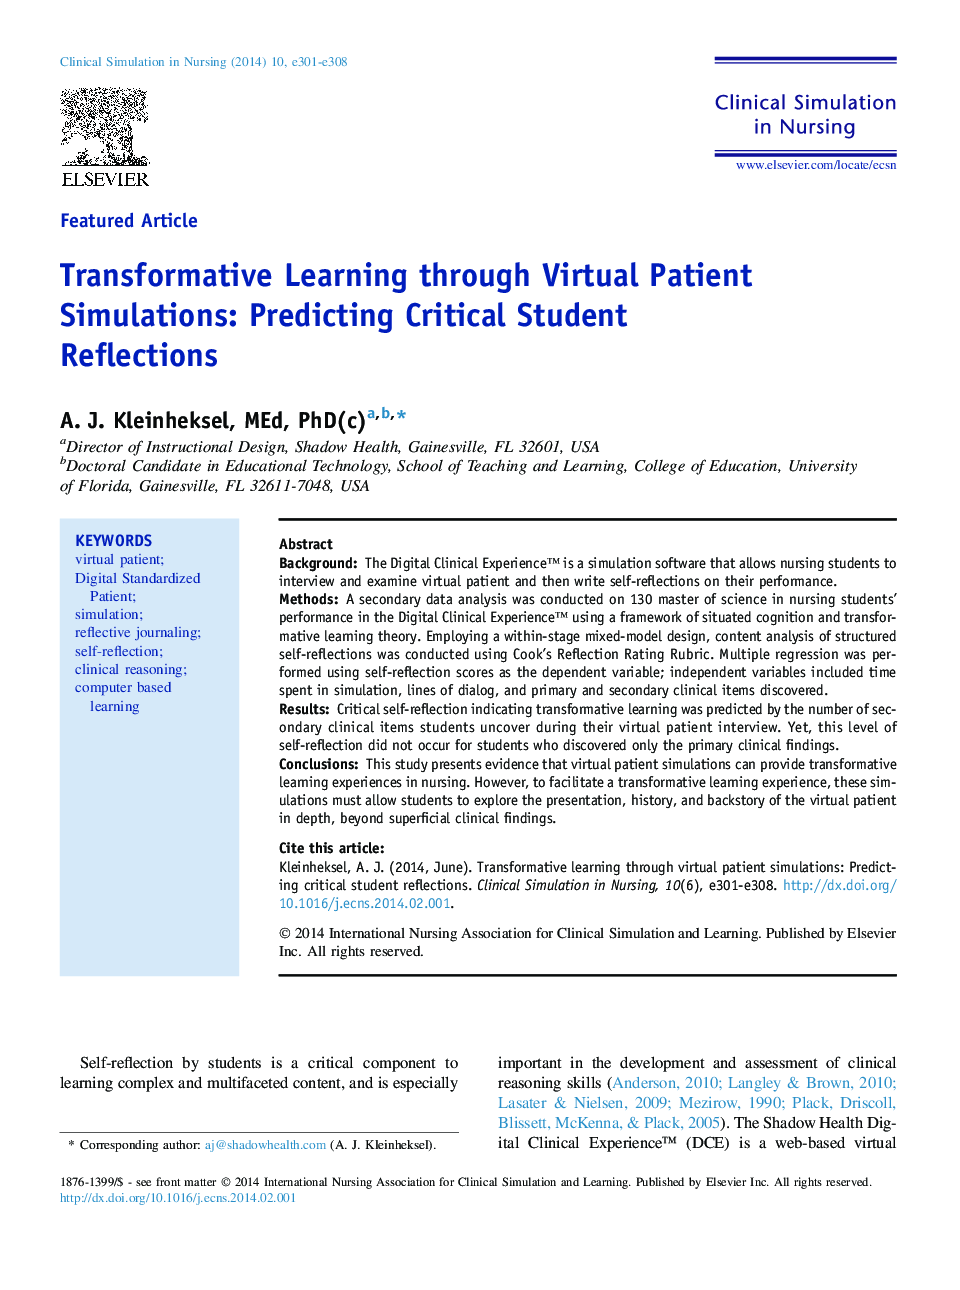 یادگیری ترانسفورماتور از طریق شبیه سازی های بیمار مجازی: پیش بینی بازتاب های دانشجویی انتقادی 